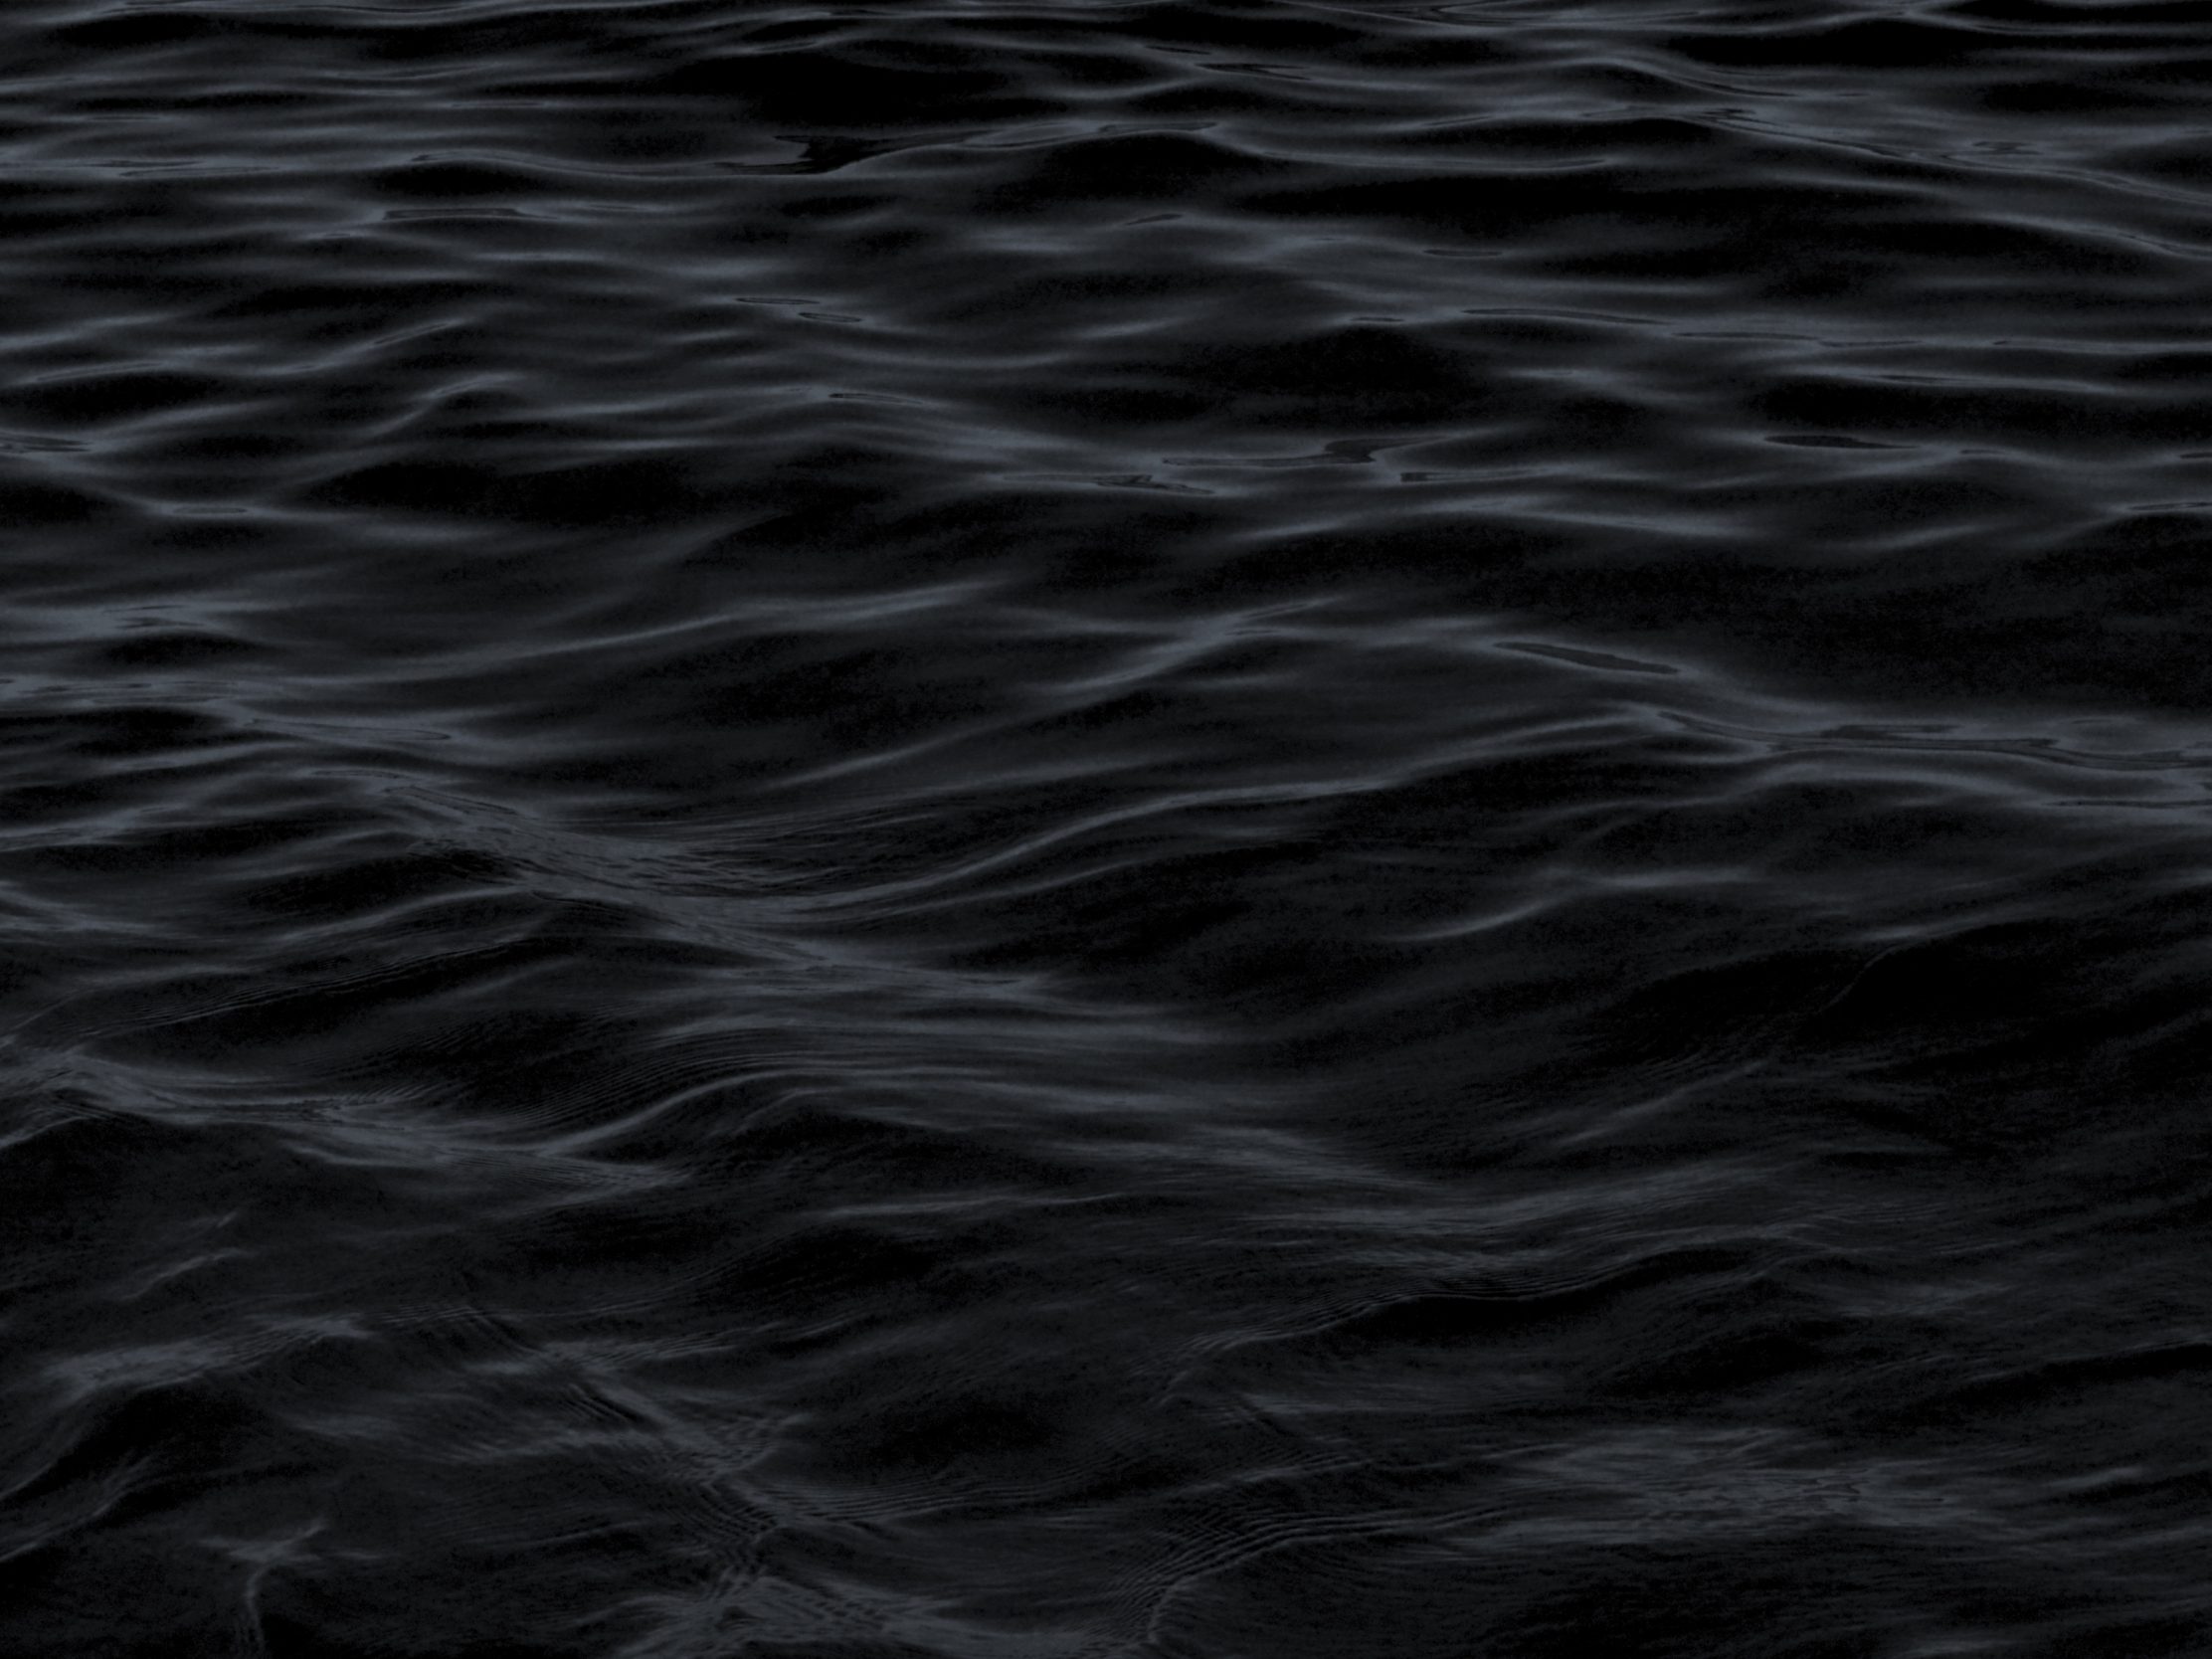 2224x1668 iPad Pro wallpapers Dark Water Waves Sea Pattern iPad Wallpaper 2224x1668 pixels resolution